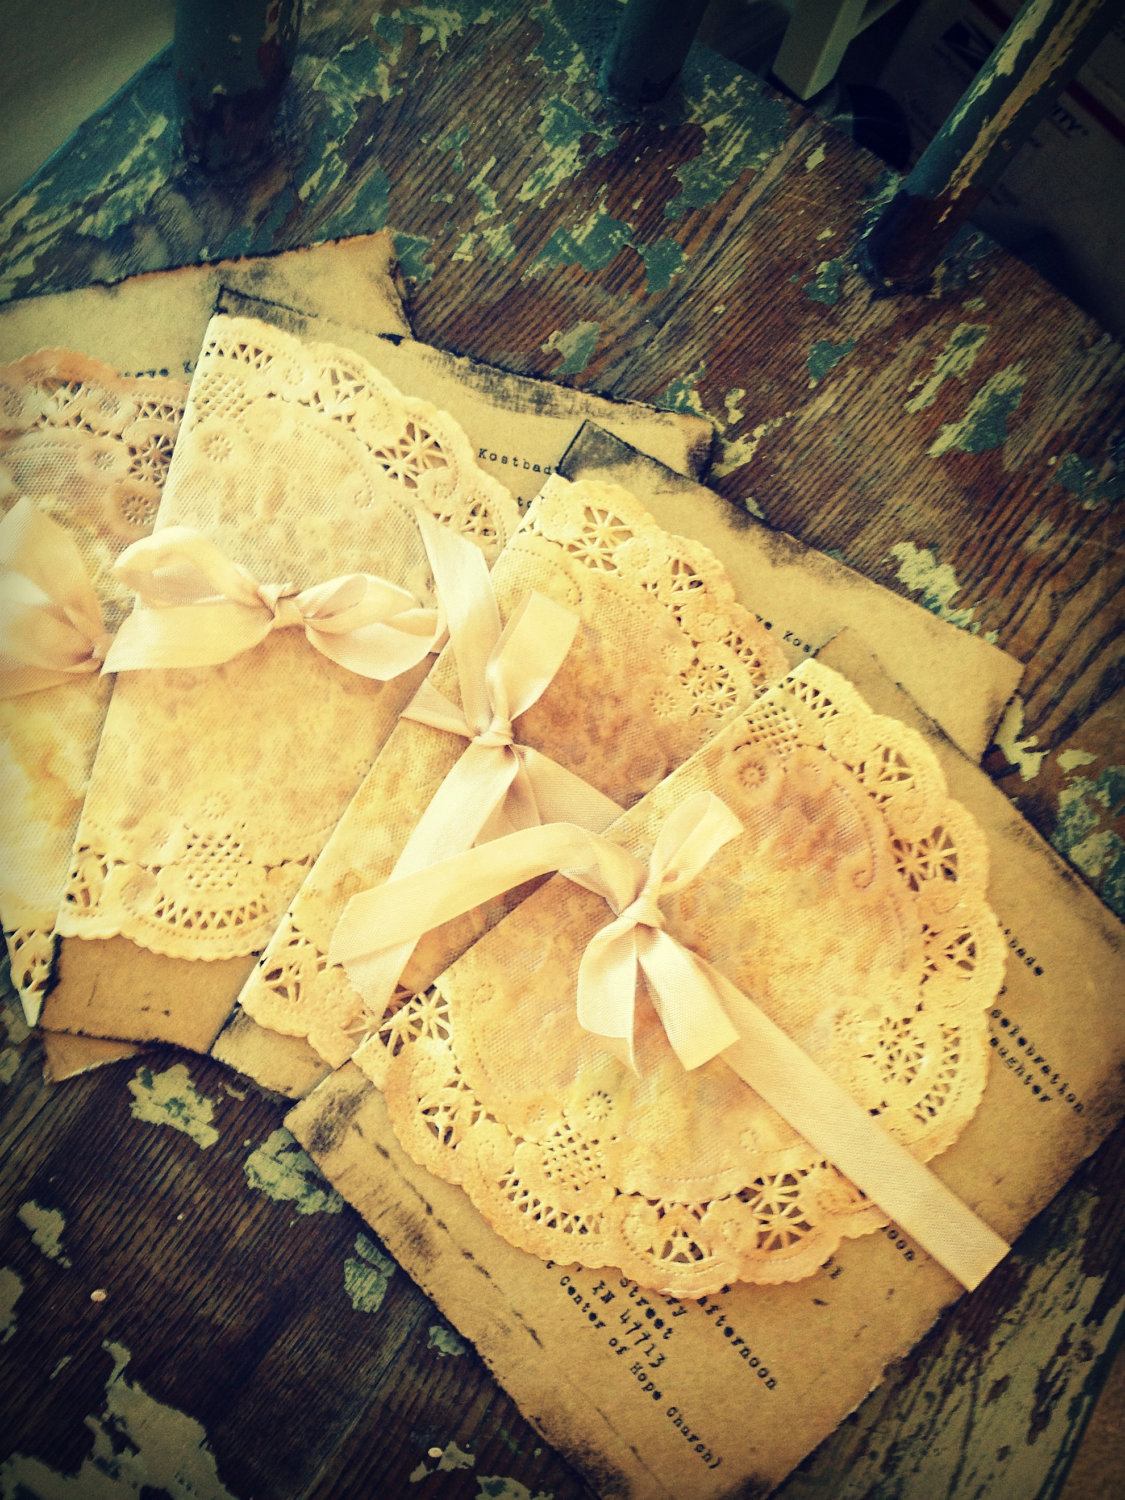 vintage-lace-wedding-invitations